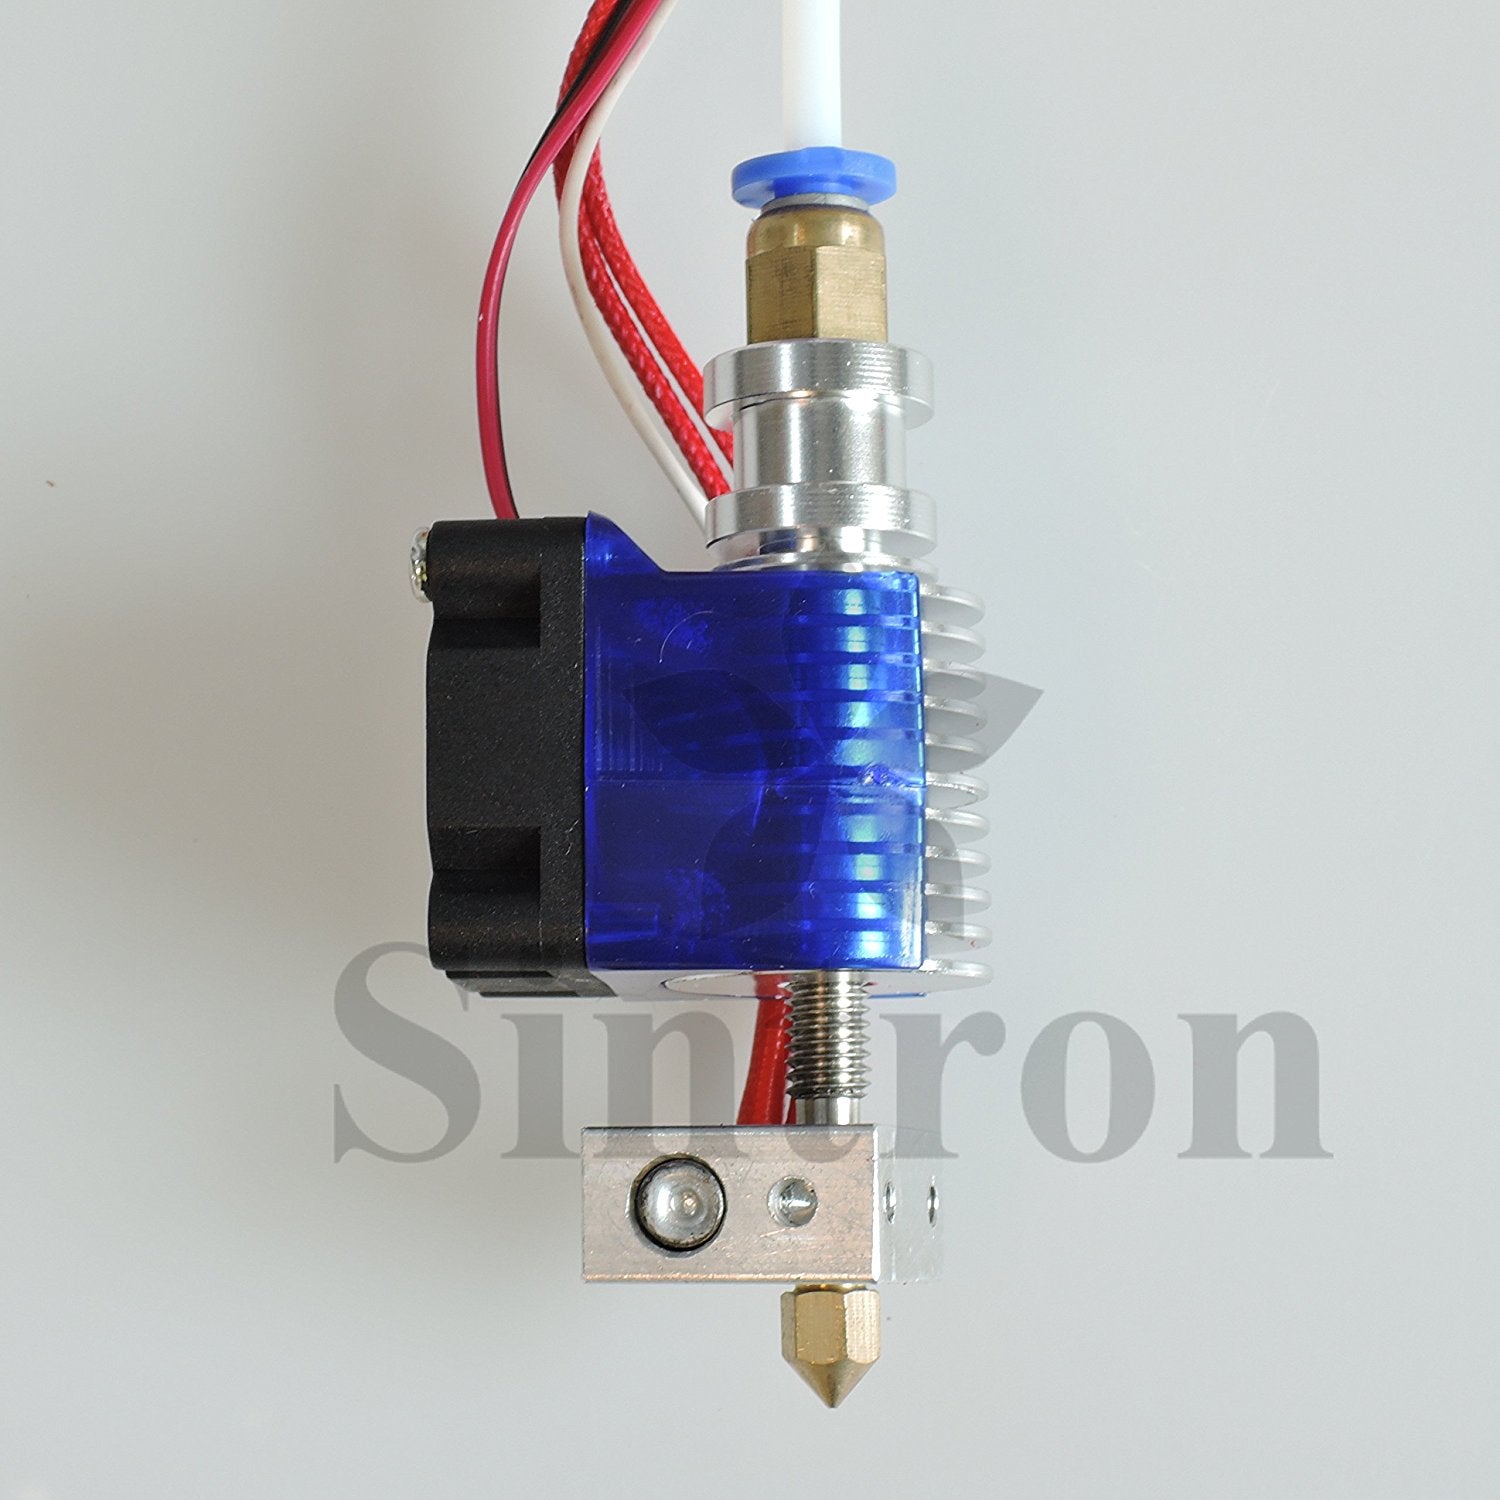 Glat velgørenhed fantastisk Sintron] 3D Priner All Metal J-Head V6 Bowden Hot End 0.4mm Nozzle wi –  Sintron Technology